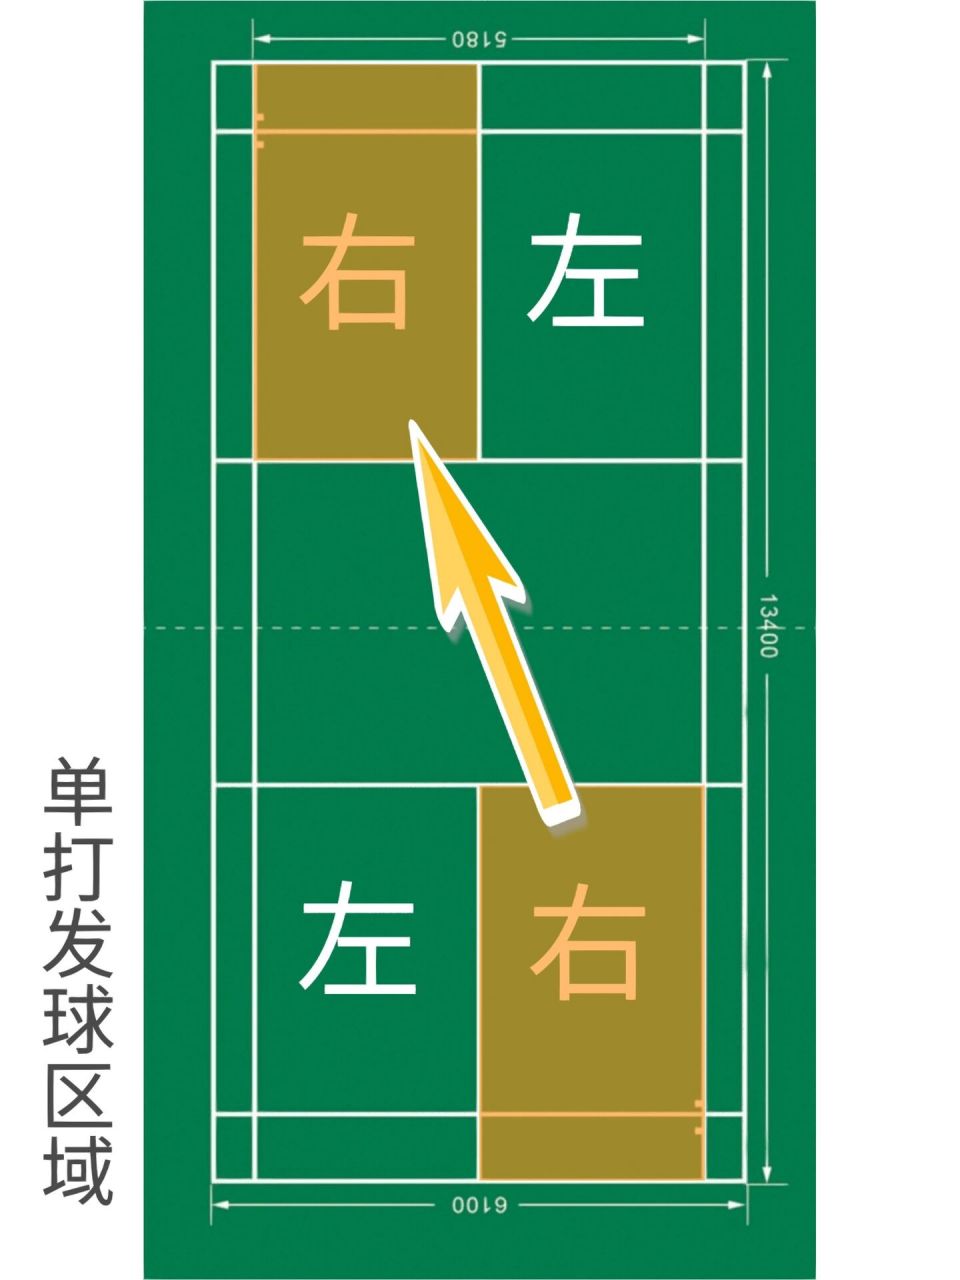 羽毛球单打规则边界线图片